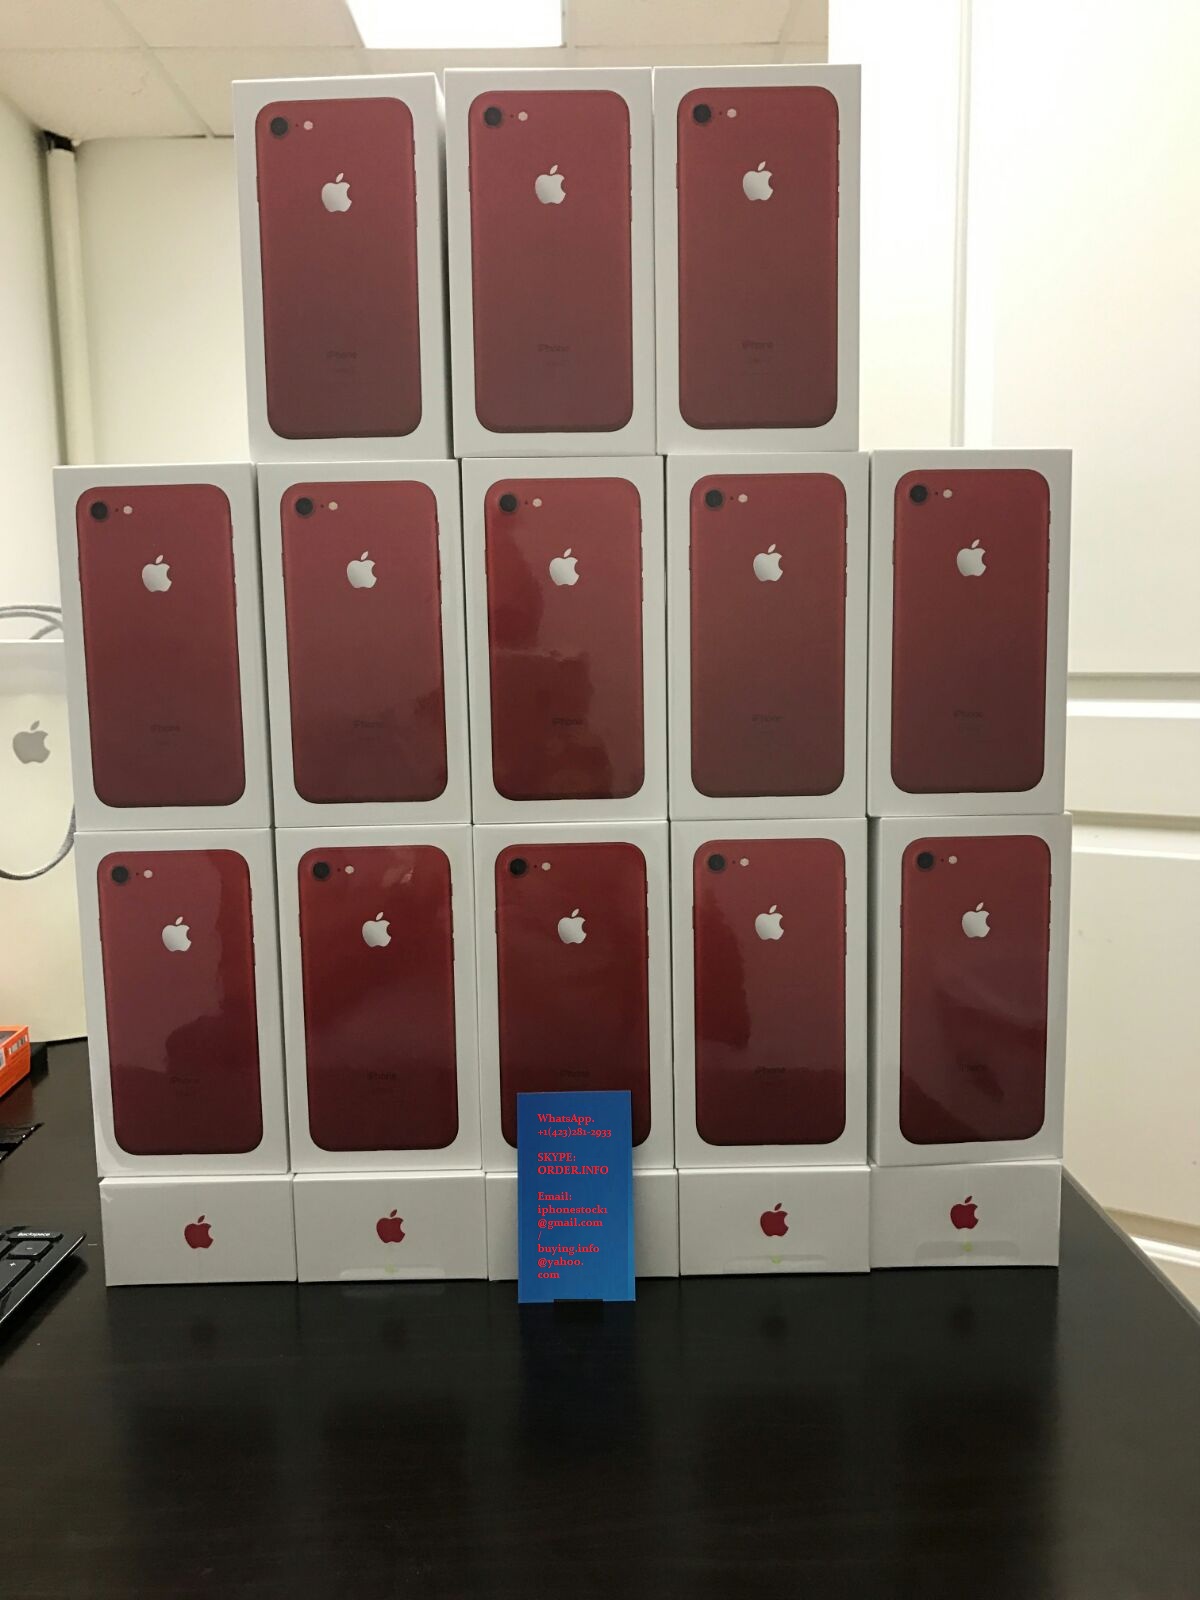 Apple iPhone 7 (Красный), 7Plus, Galaxy S8, S8+, S7, J7, A7 - Мобильные телефоны,аксессуары